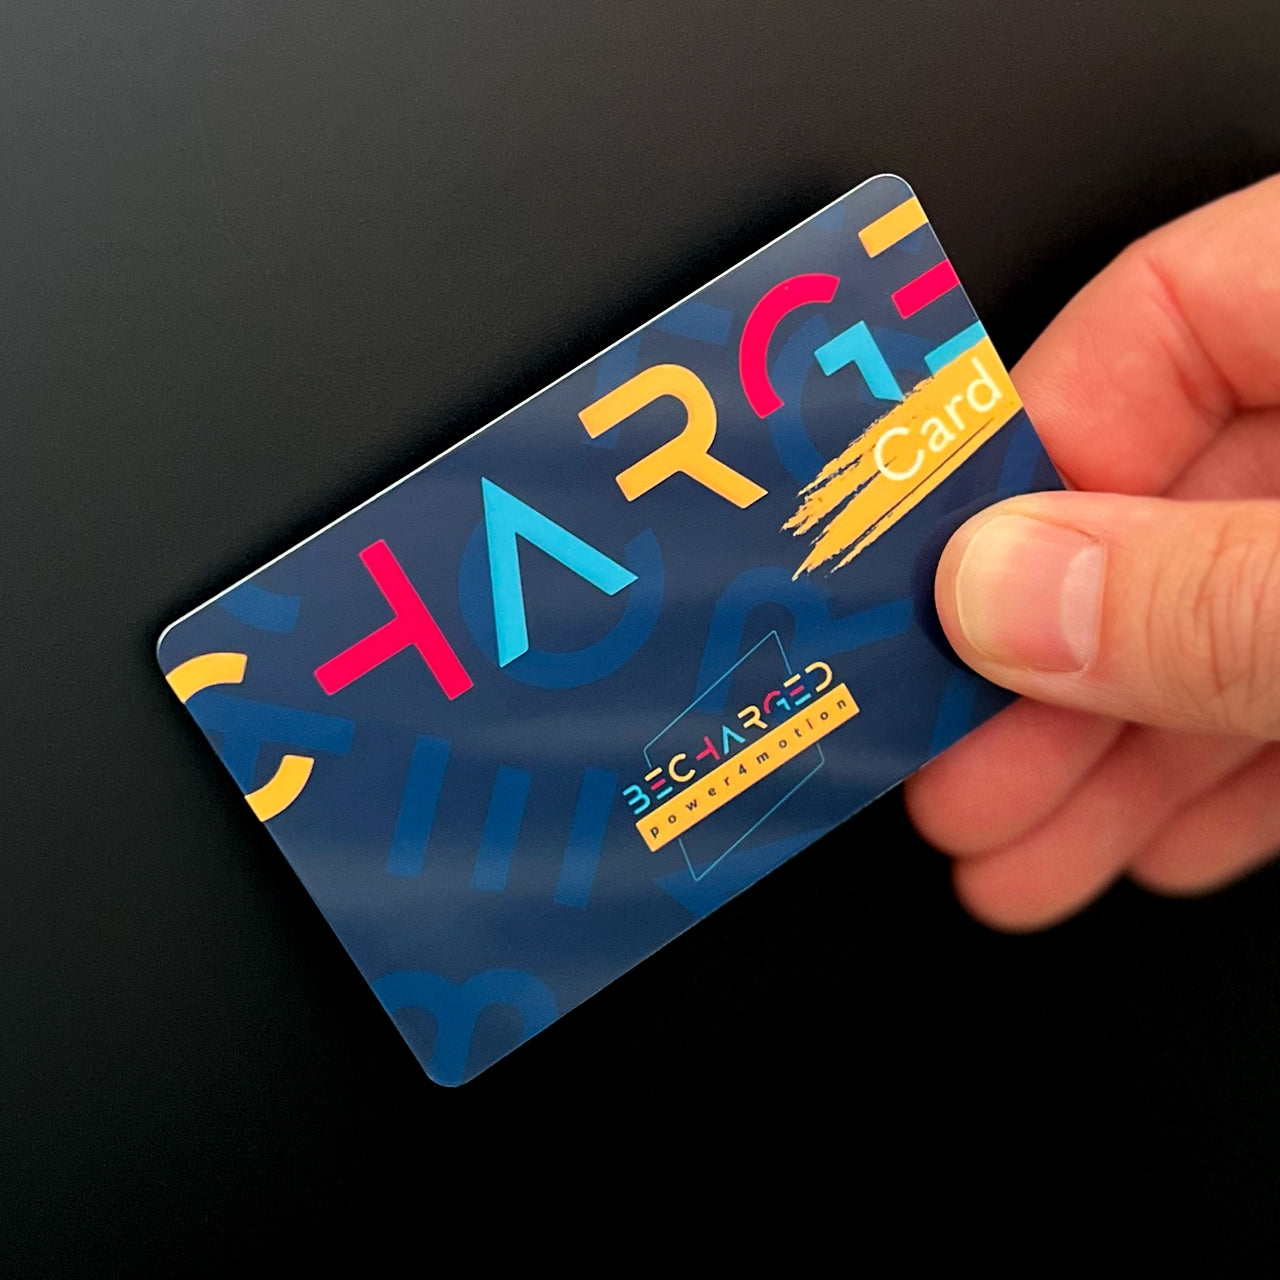 Eine Hand hält die becharged RFID-Karte an eine Oberfläche. Die RFID-Karte ist dunkelblau, darauf ist in der oberen Hälfte von links nach rechts in großen gelben, roten und hellblauen Buchstaben "Charge" geschrieben. Unter den letzten beiden Buchstaben ist ein gelber Pinselstrich auf dem in weißen Buchstaben "Card" geschrieben steht. In der unteren Hälfte ist das bunte Logo "becharged power4motion" aufgedruckt.